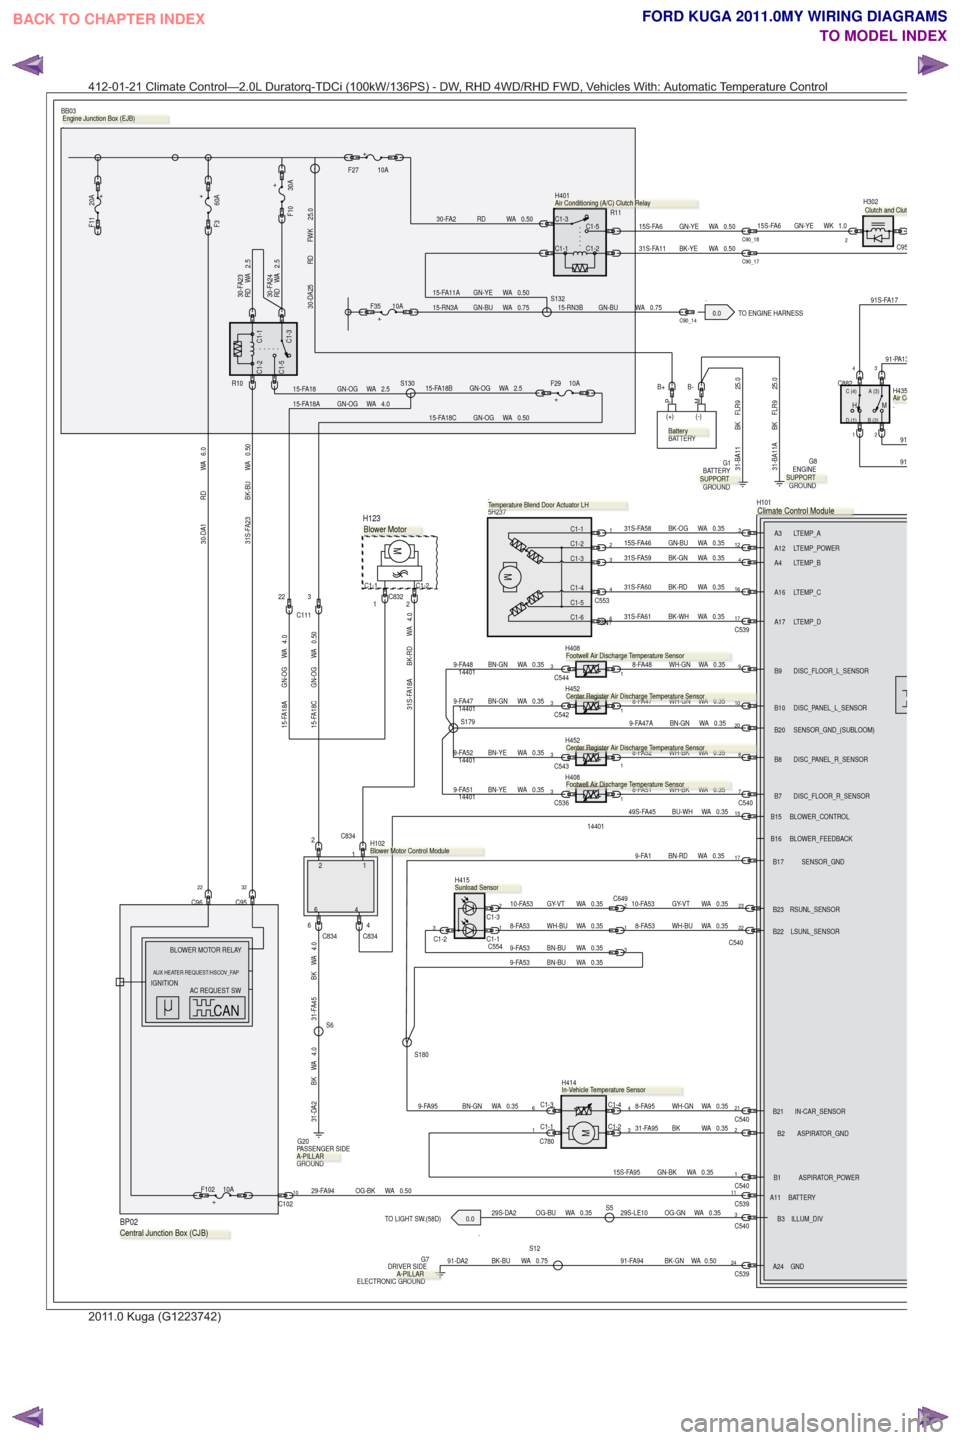 FORD KUGA 2011 1.G Wiring Diagram Workshop Manual .0.0
TO LIGHT SW.(58D)
.0.0 TO ENGINE HARNESS
0.35
WA
GN-BK
15S-FA95
29-FA94 OG-BK WA 0.50
C53924
1C54011C539
22
C540
17
4.0
WA
BK
31-DA2
8-FA53 WH-BU WA 0.35
0.35
WA
OG-GN
29S-LE10S50.35
WA
OG-BU
29S